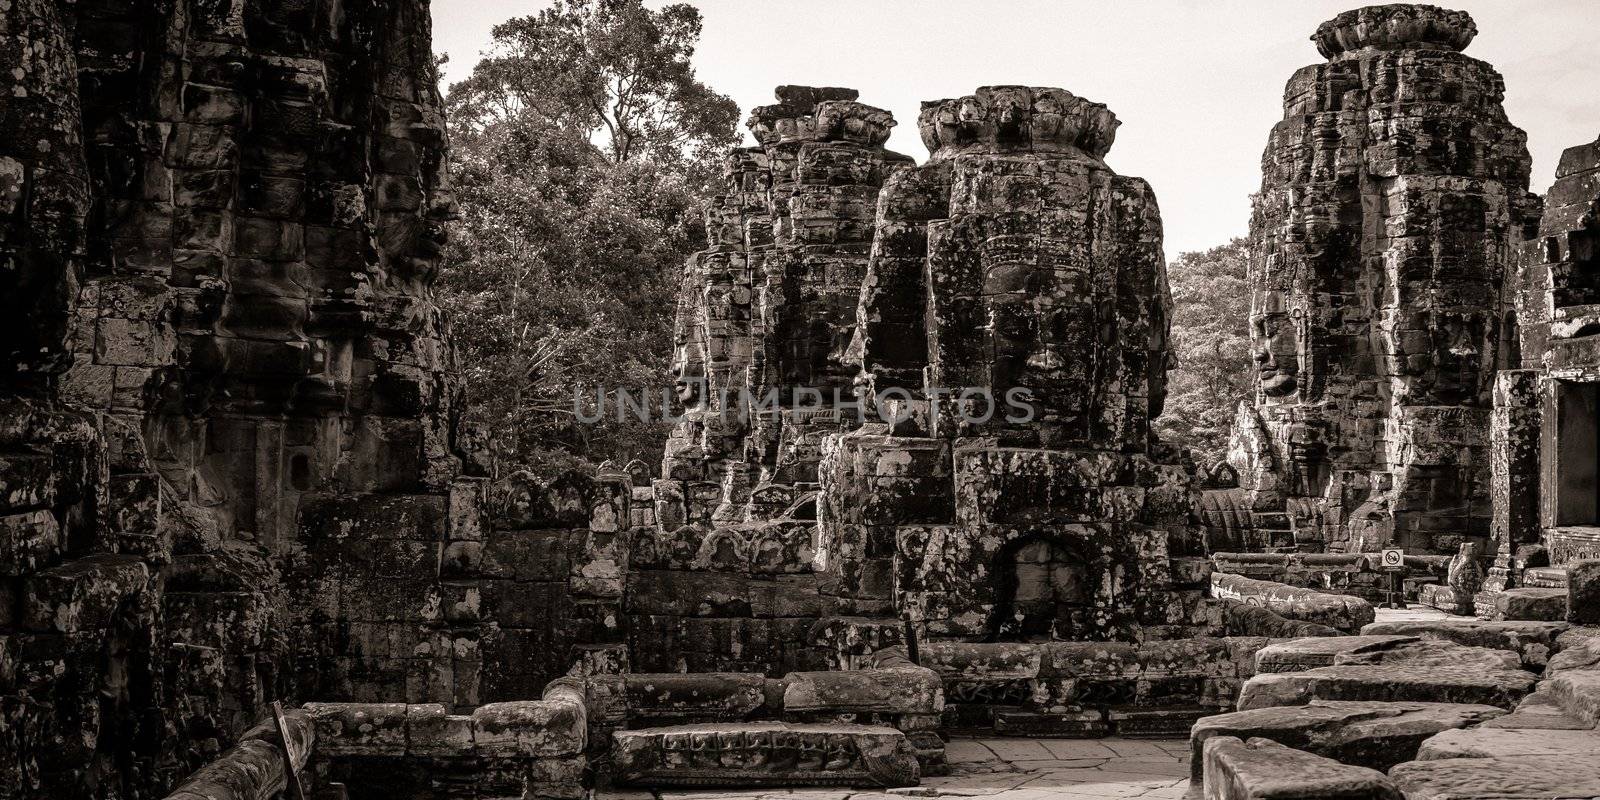 Carving in Bayon Temple at Angkor Thom/Angkor Wat, Cambodia.